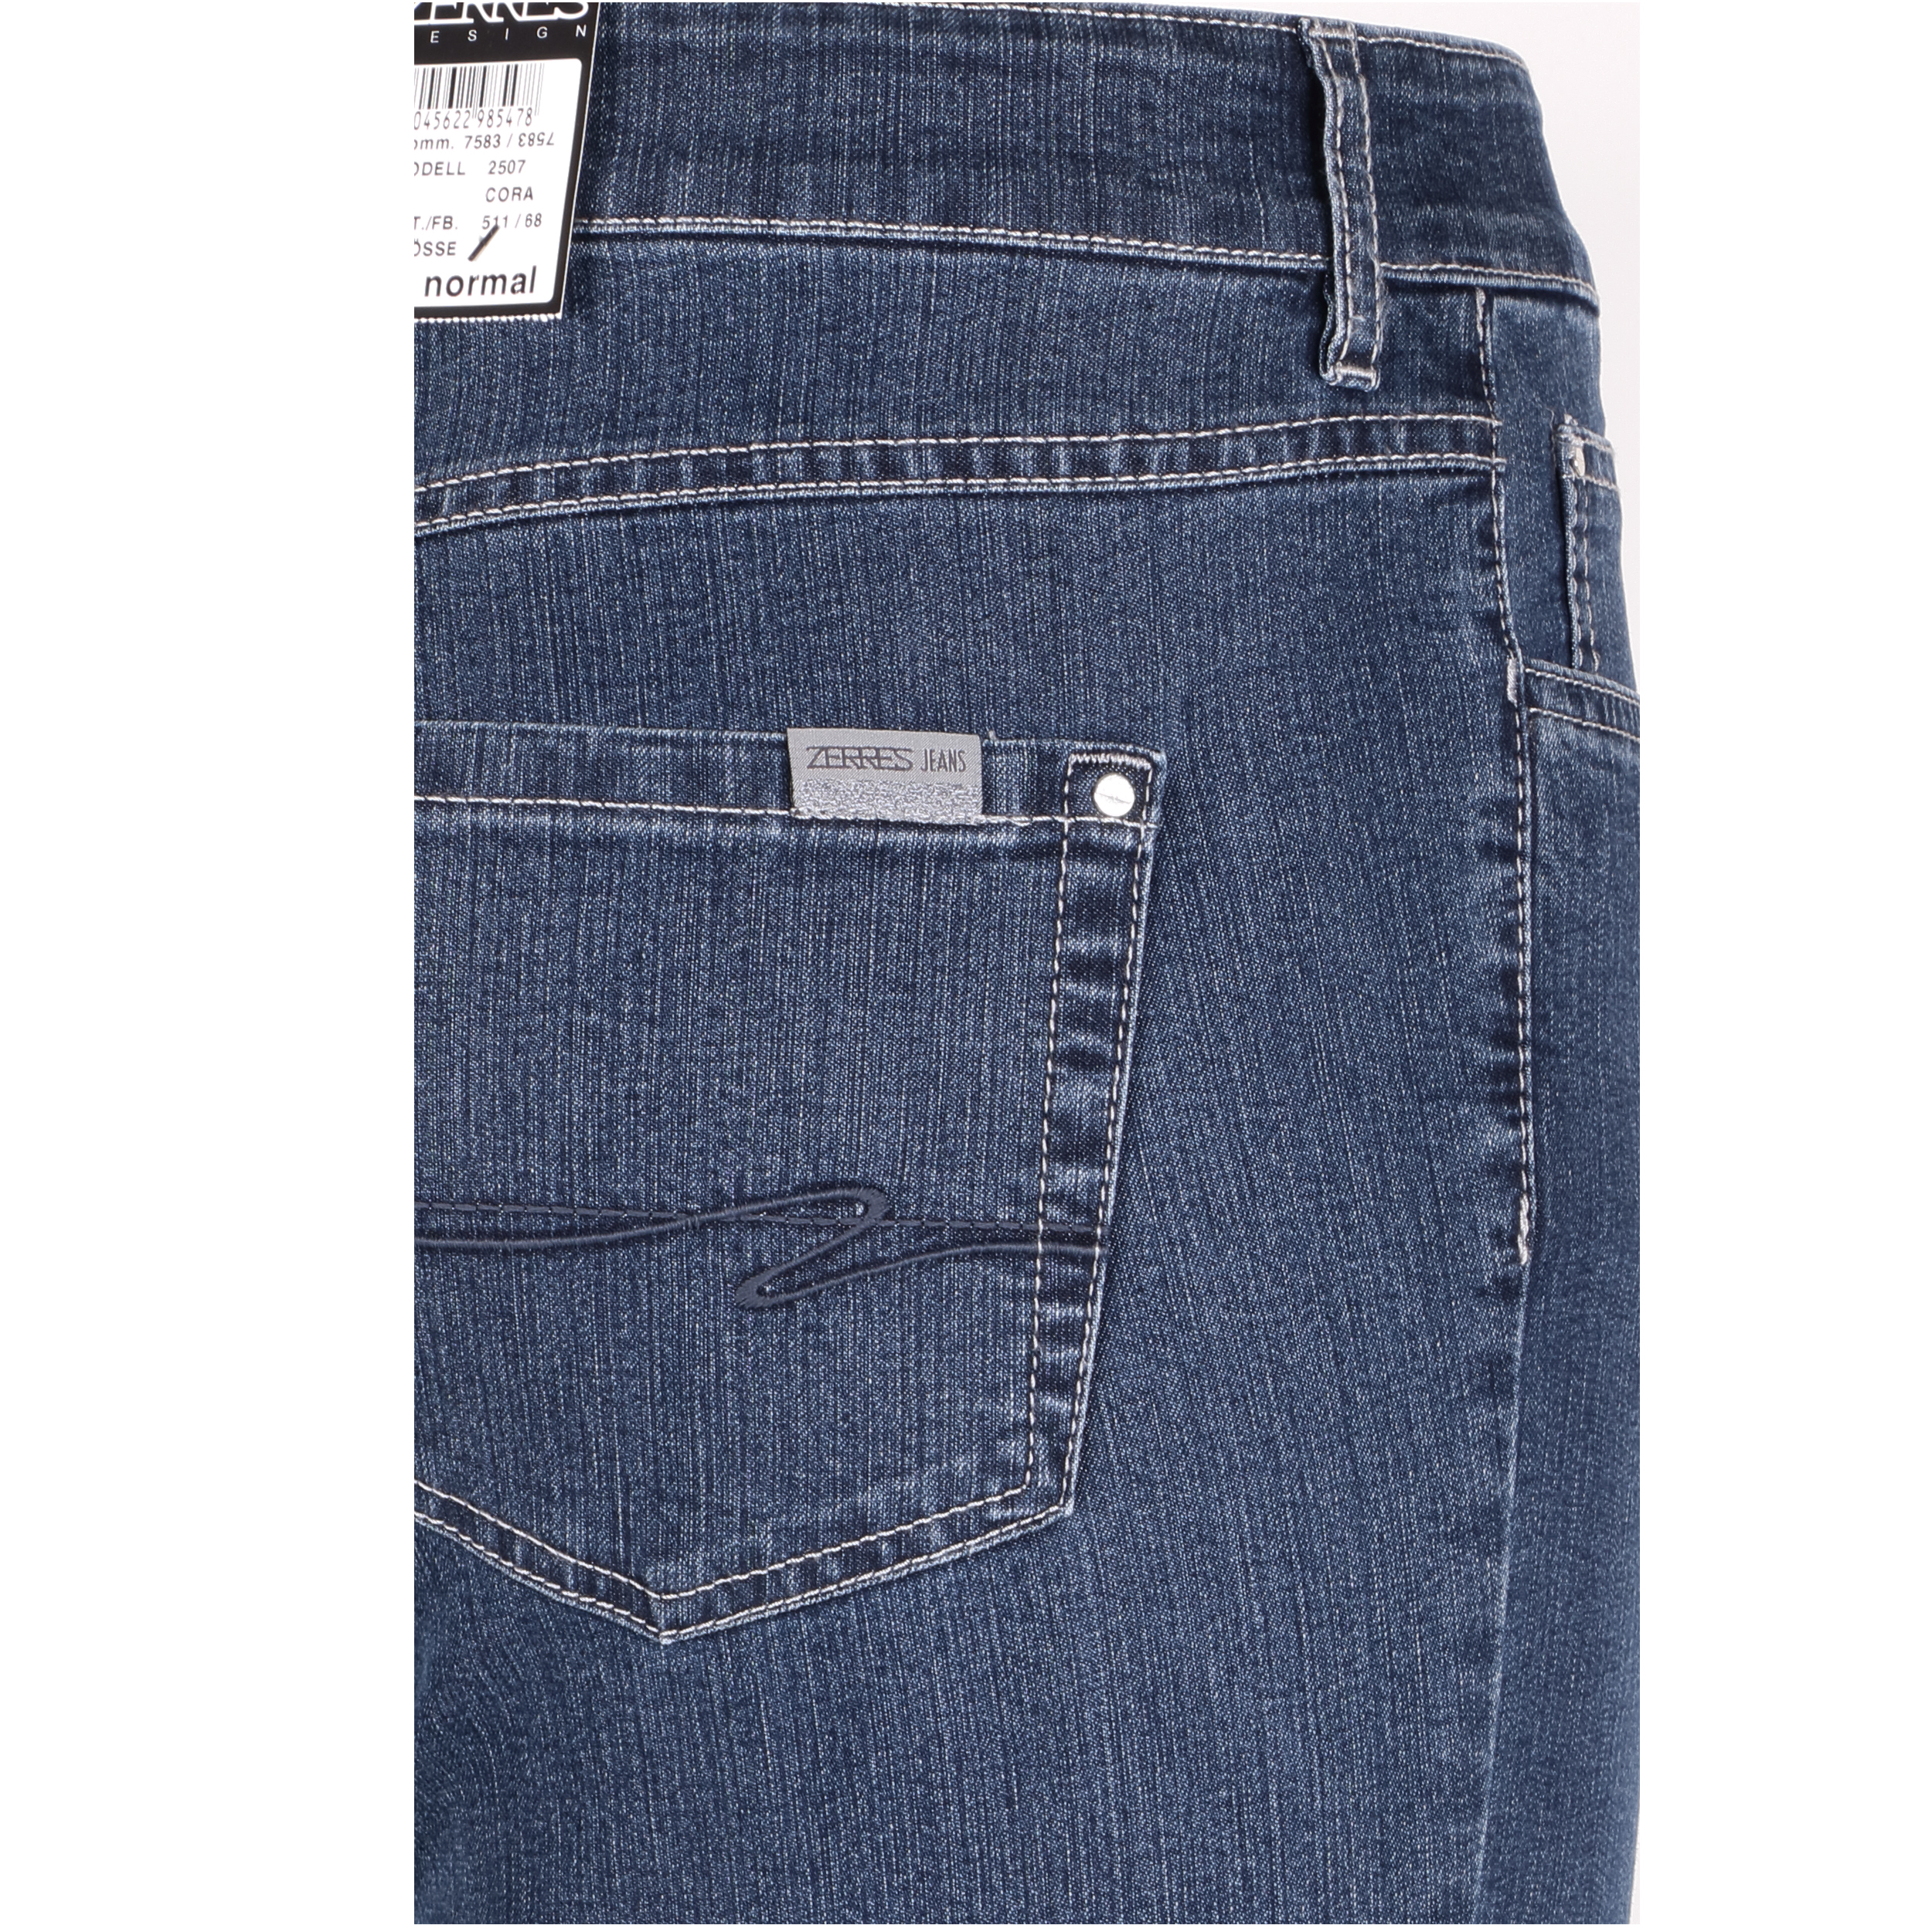 Zerres Damen Jeans Cora comfort S 46 blau